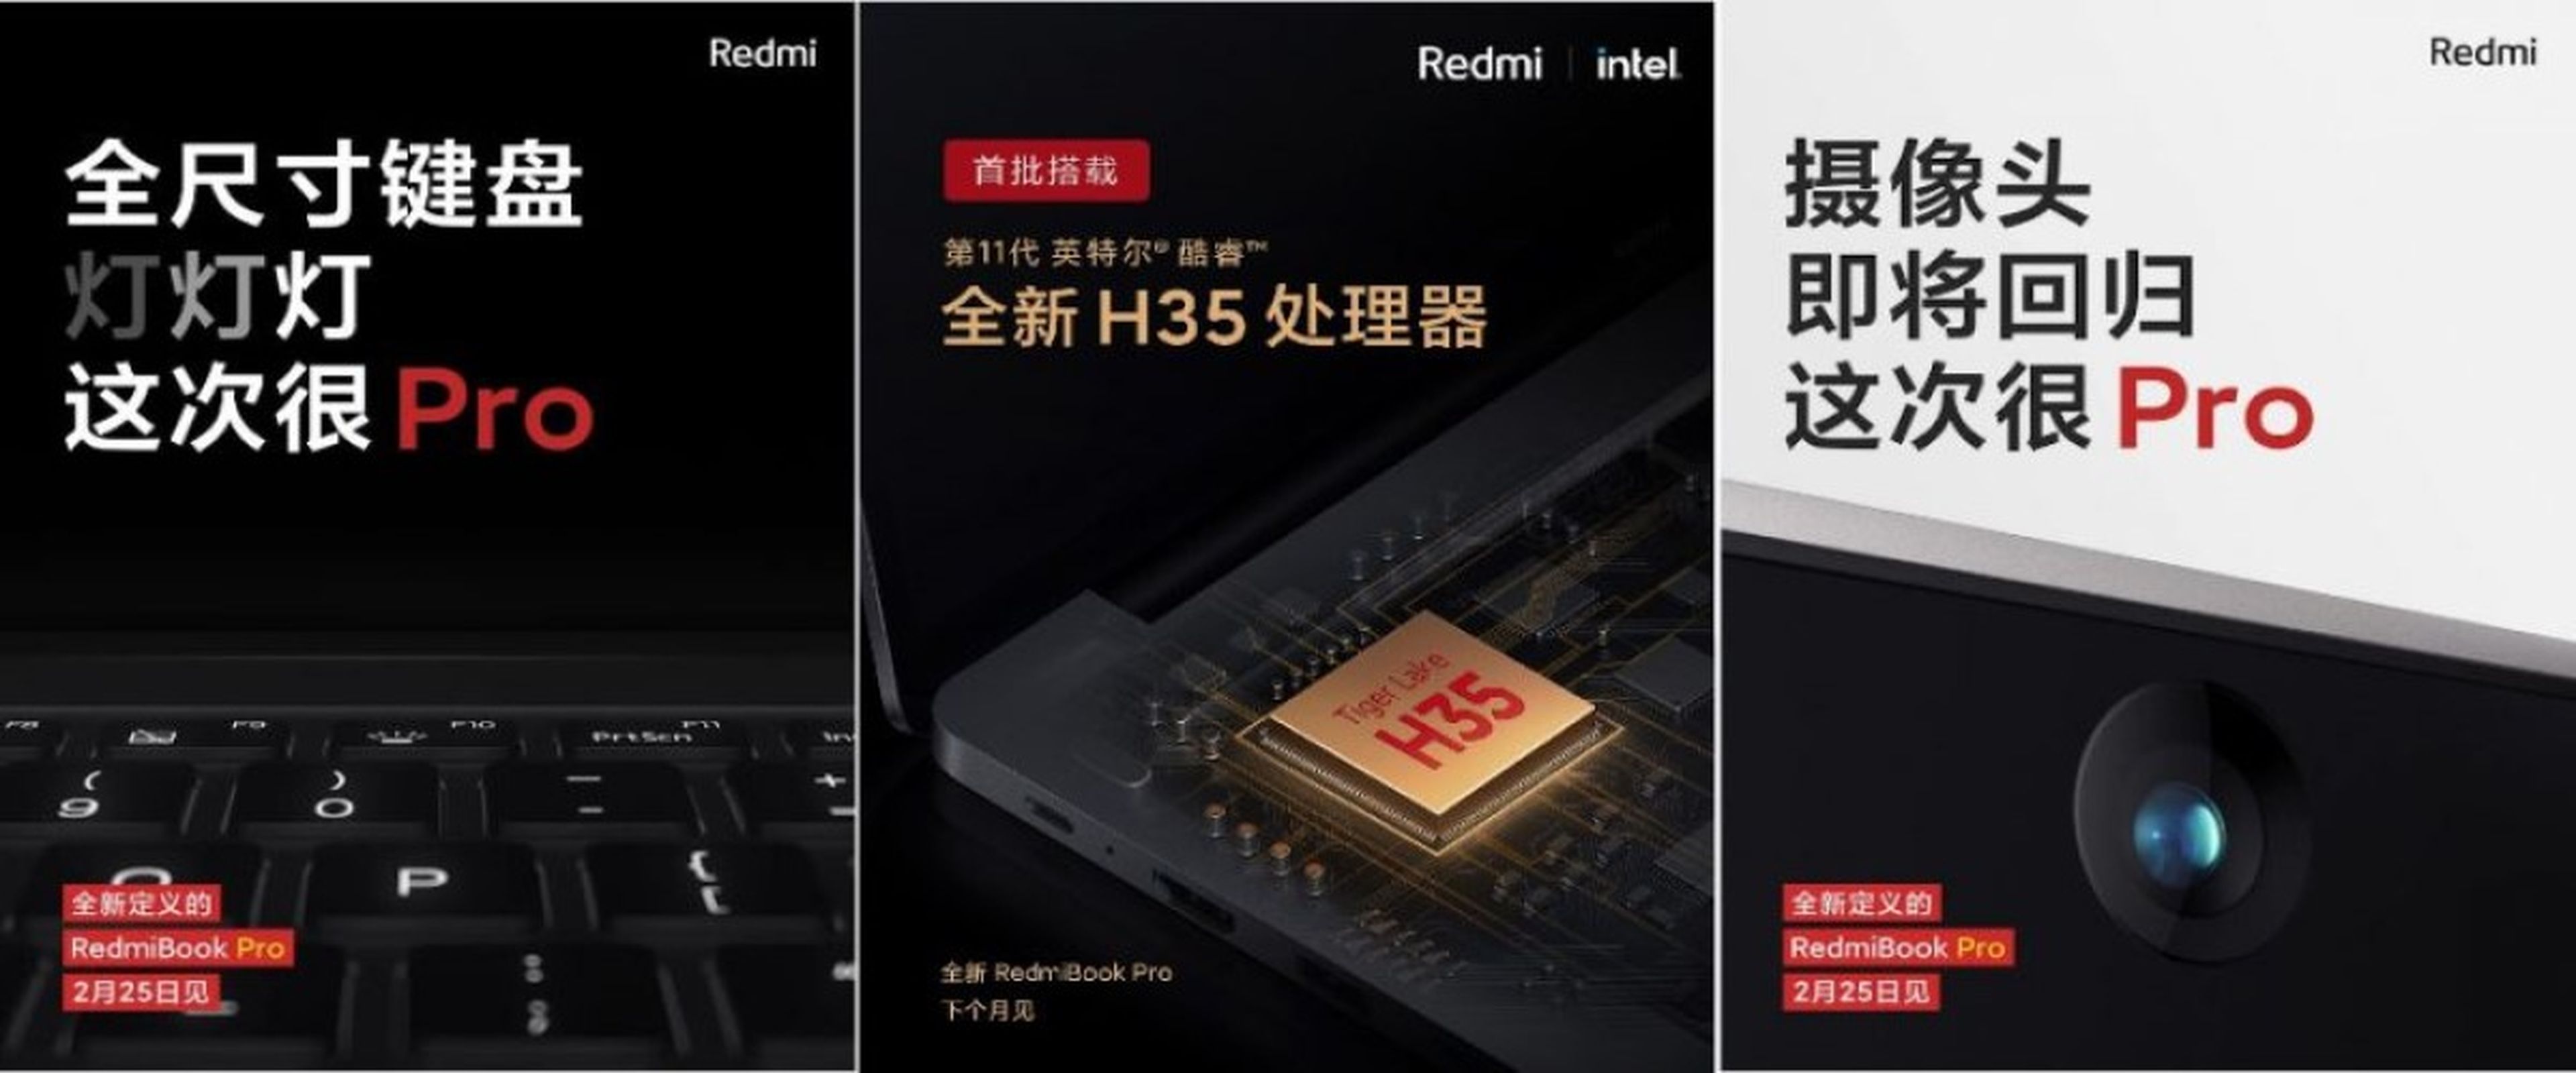 Ya tenemos el primer vistazo al RedmiBook Pro 15 y a los Redmi K40 que se presentan en unos días